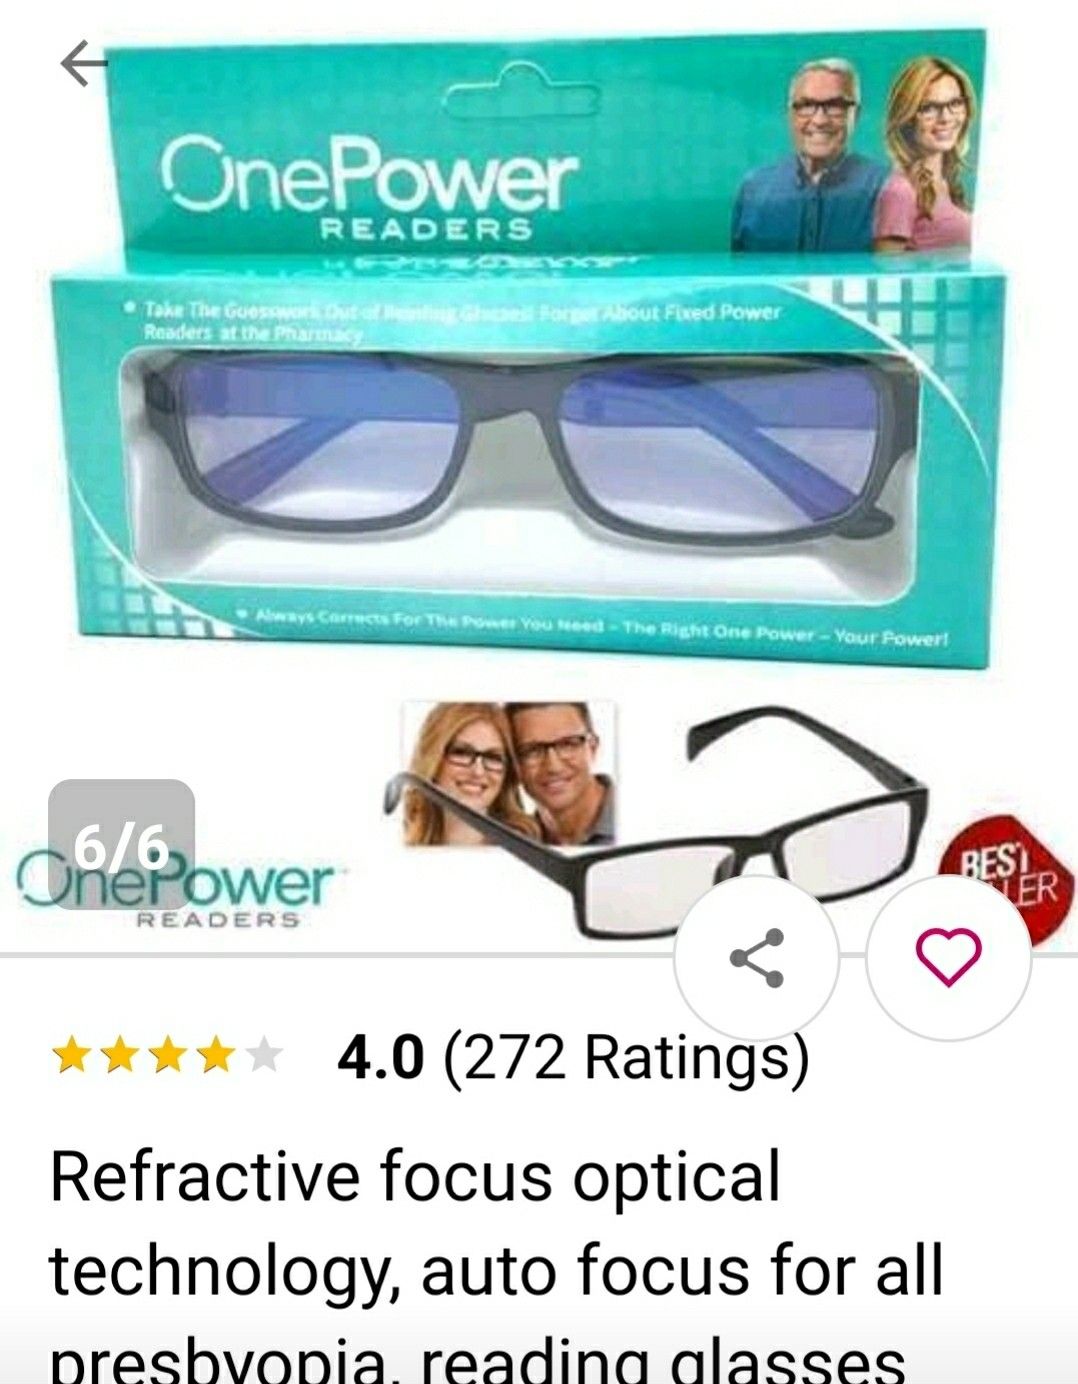 Higher power glassess New in box